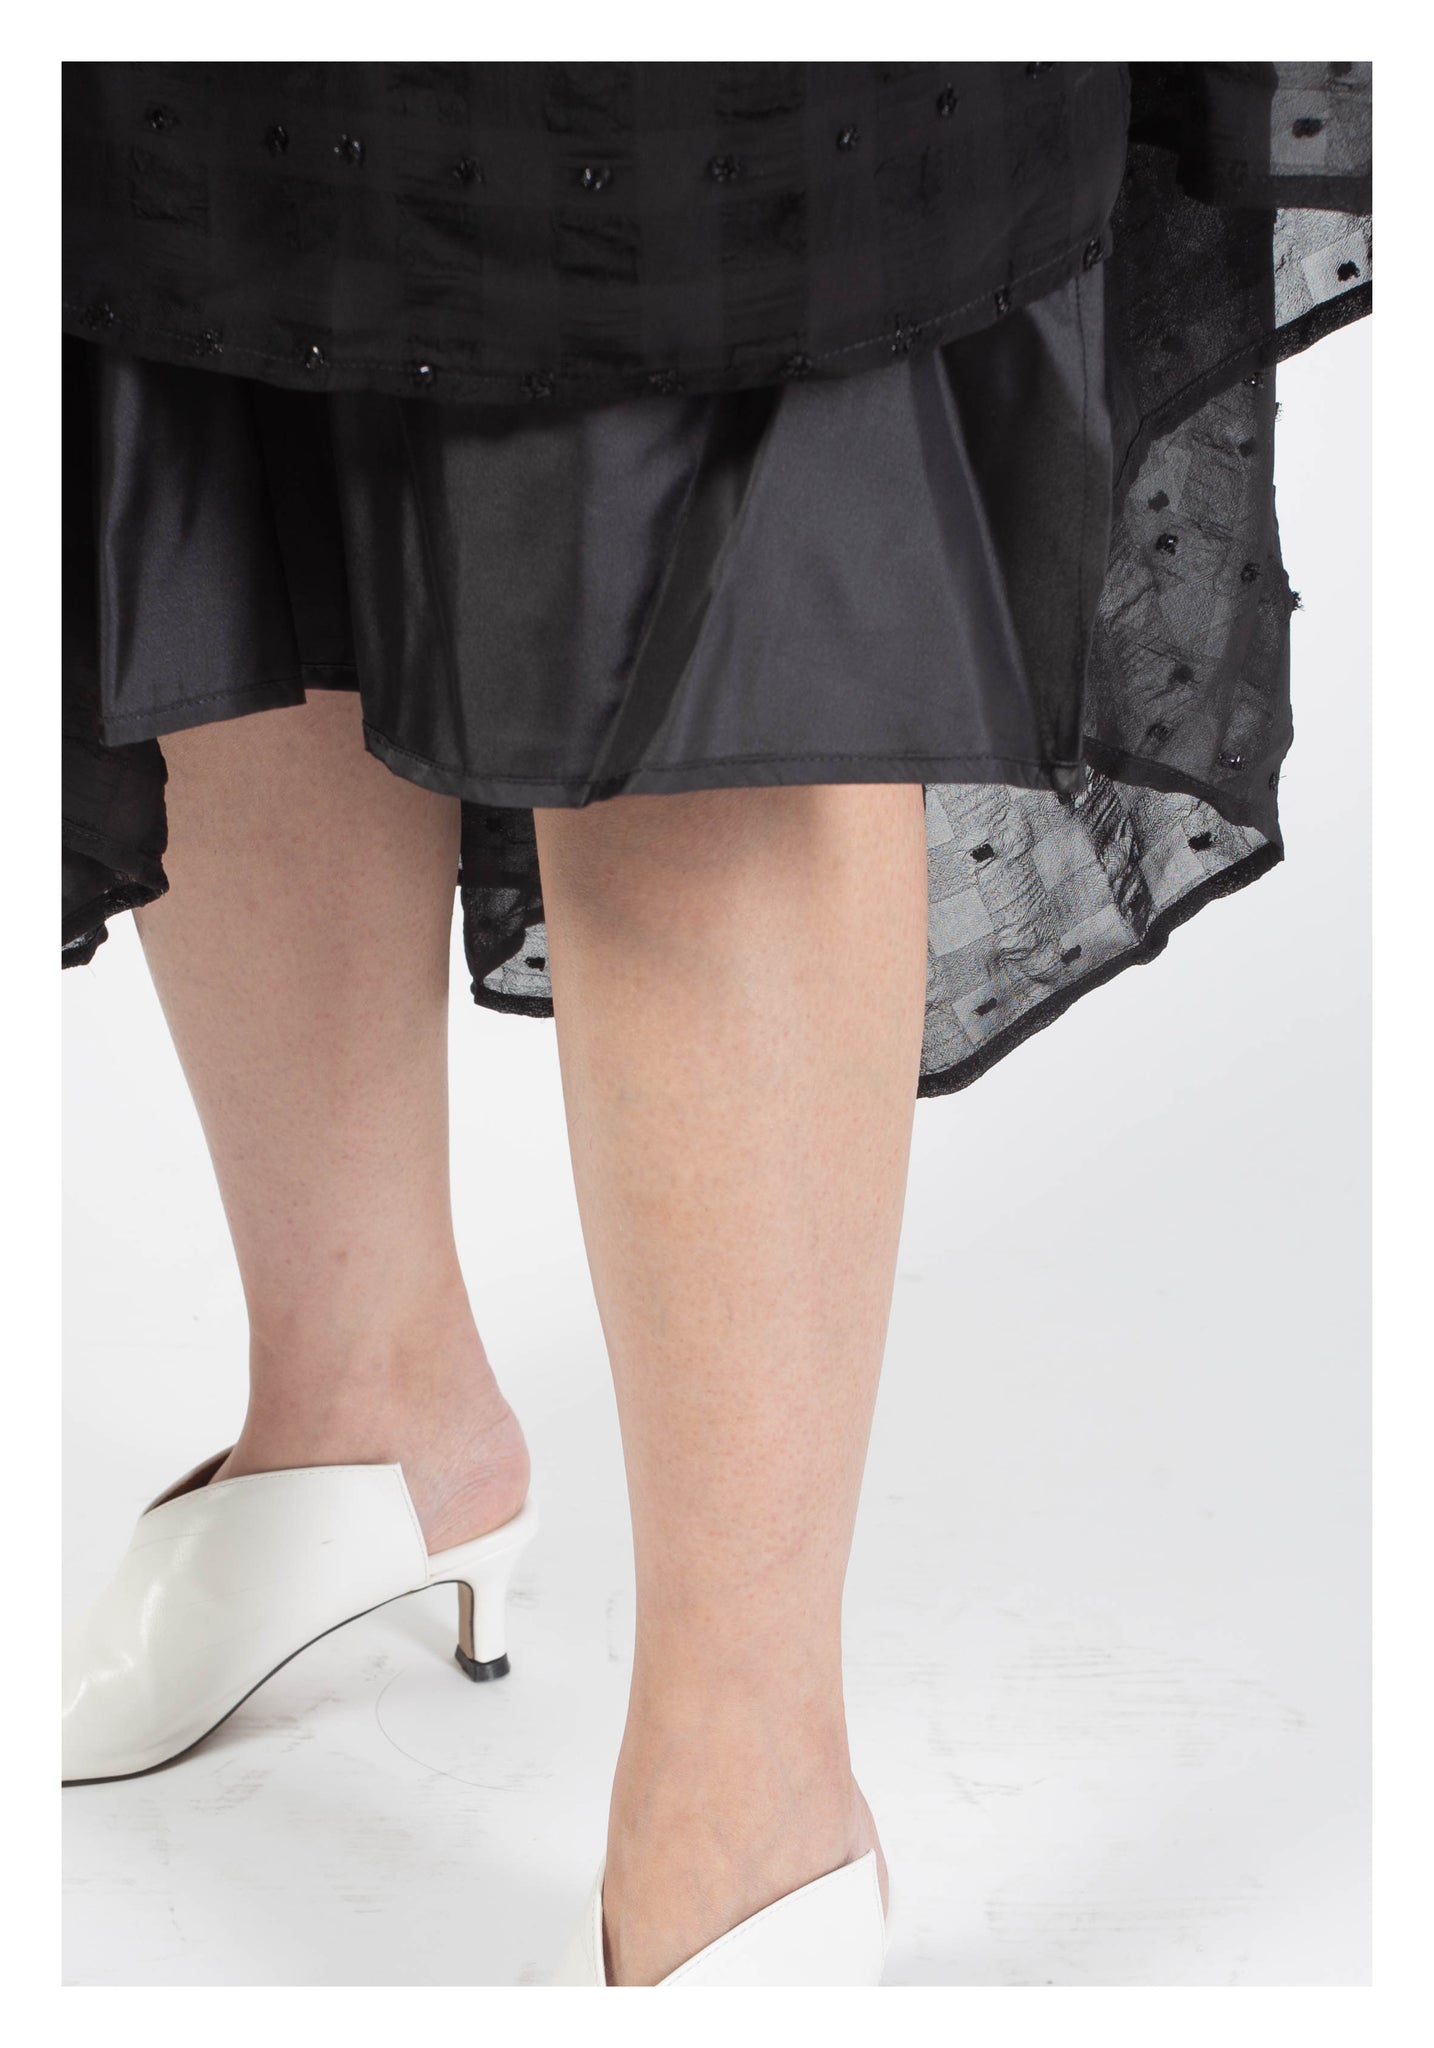 Check-Through Kaia 2.0 Skirt Black